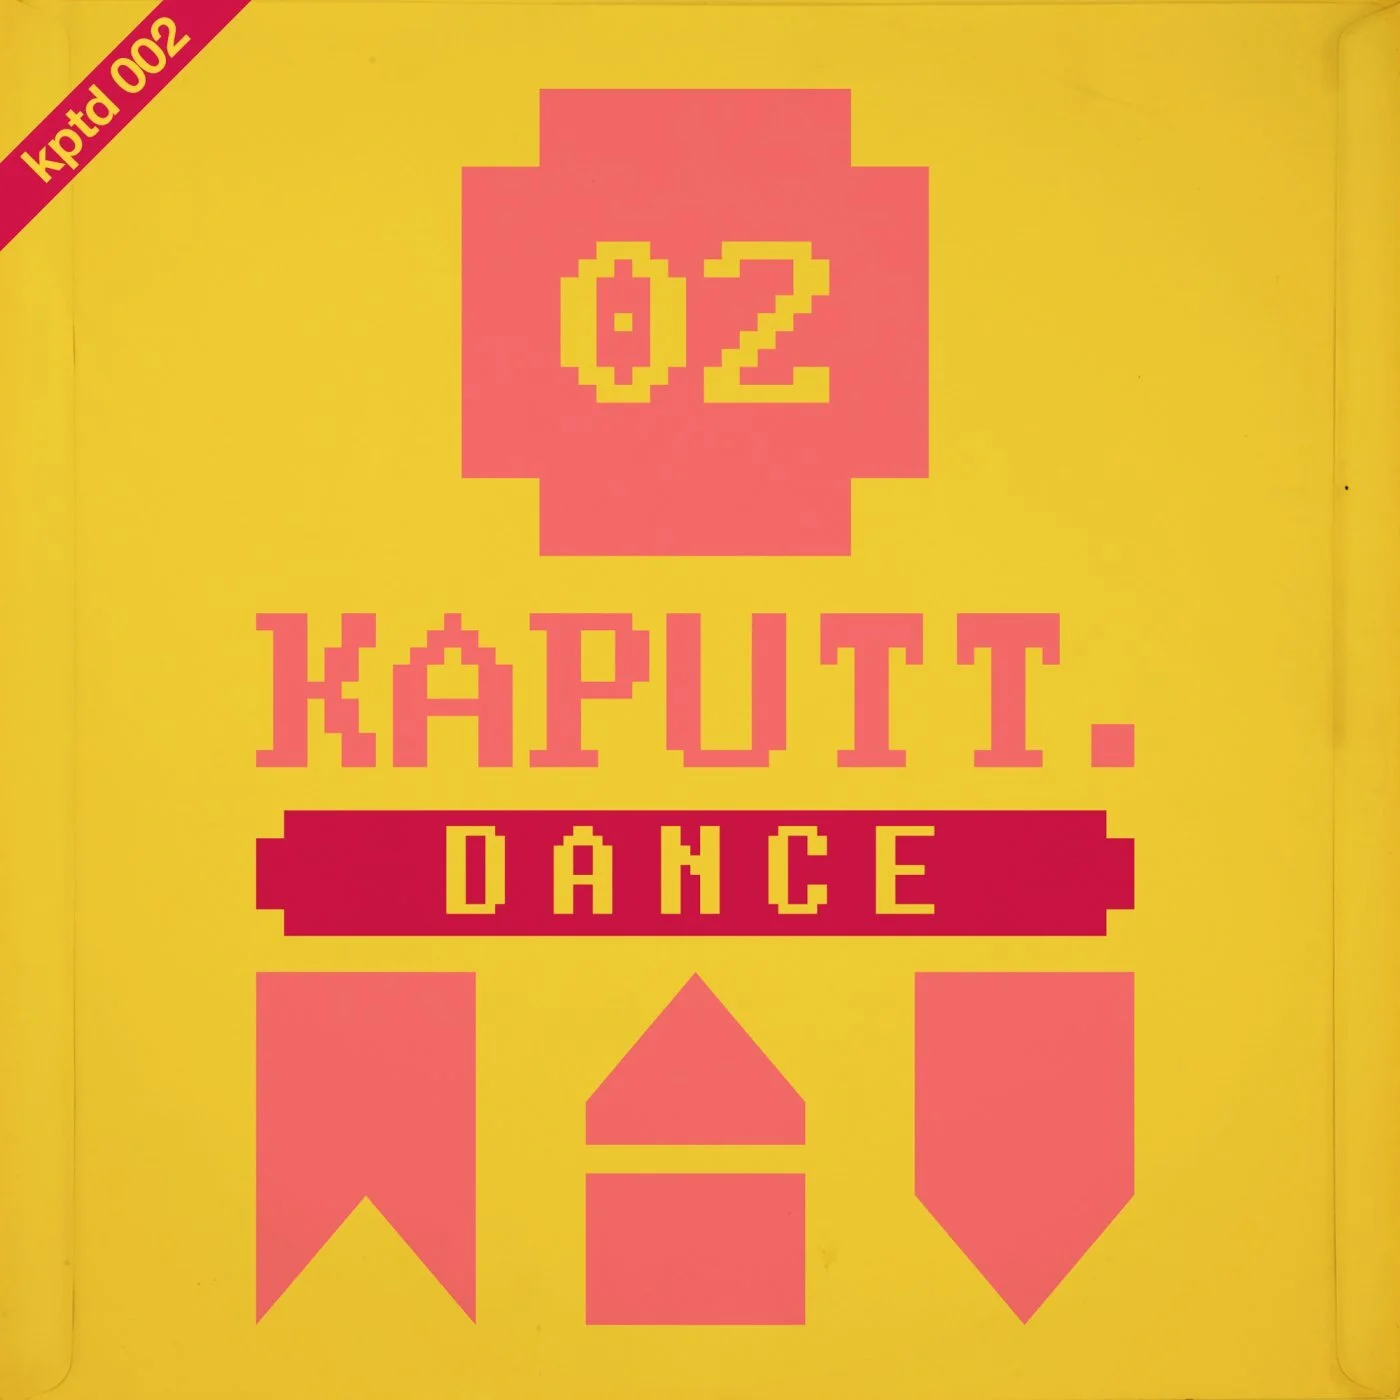 Kabinett - Magic Dance (Estás Demente) (Original Mix)